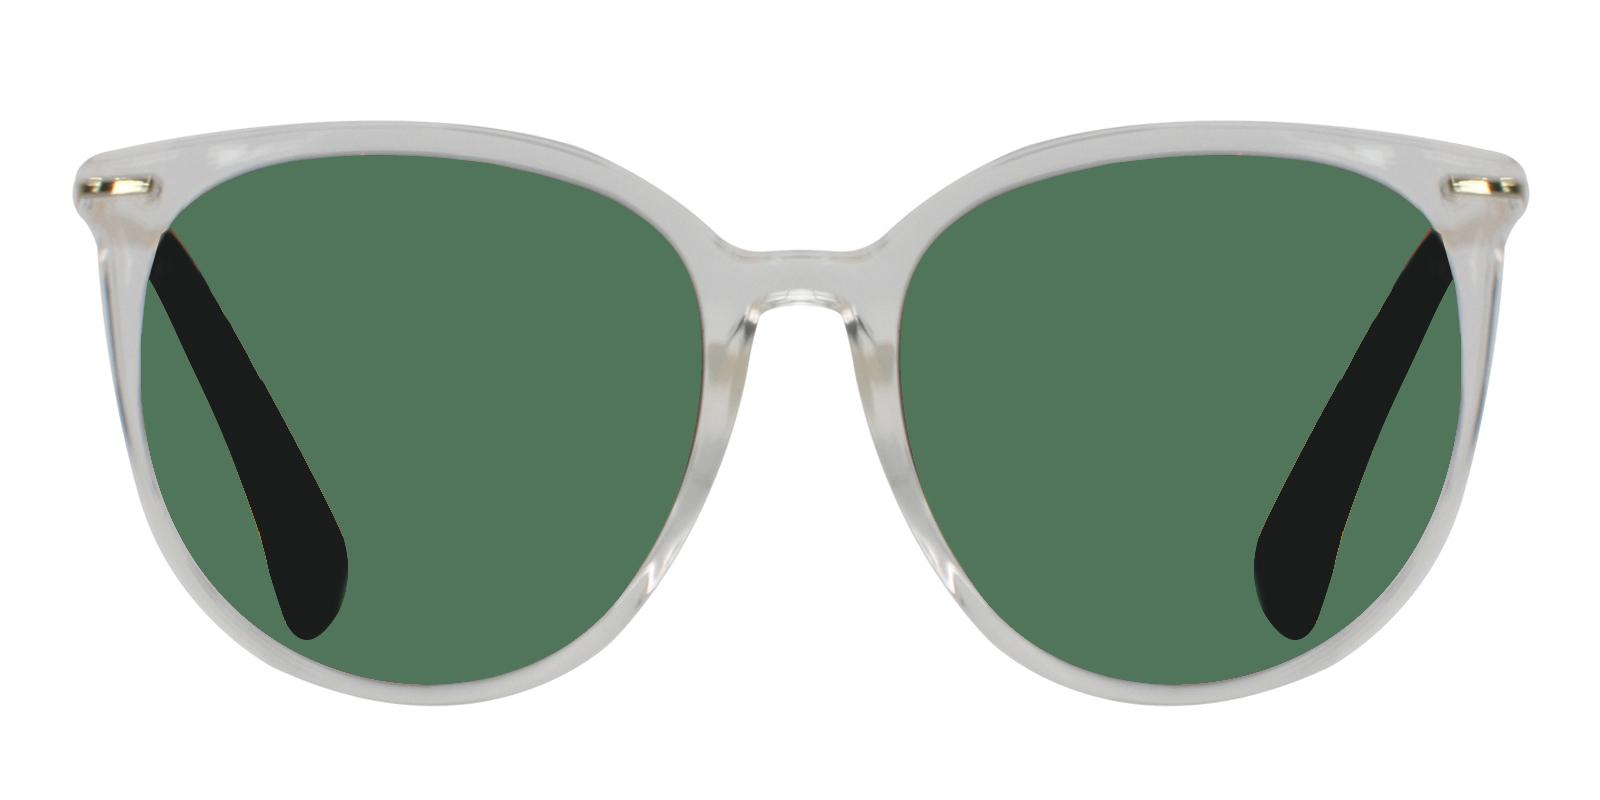 Coon Rapids Prescription Sunglasses Front